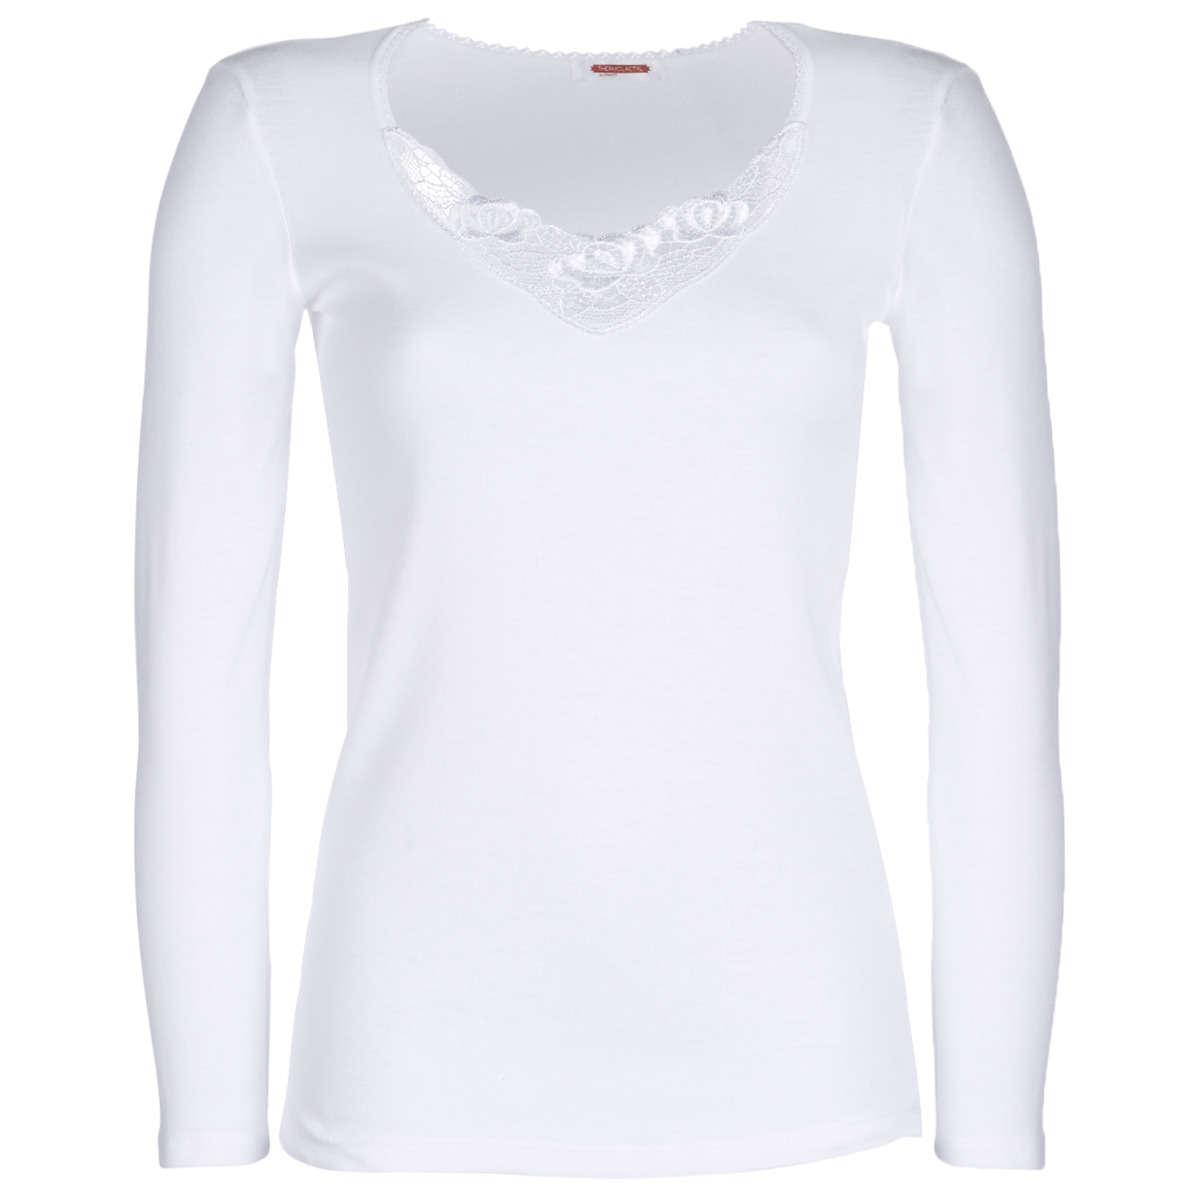 Unterwäsche Damen Unterhemden Damart CLASSIC GRADE 3 Weiß